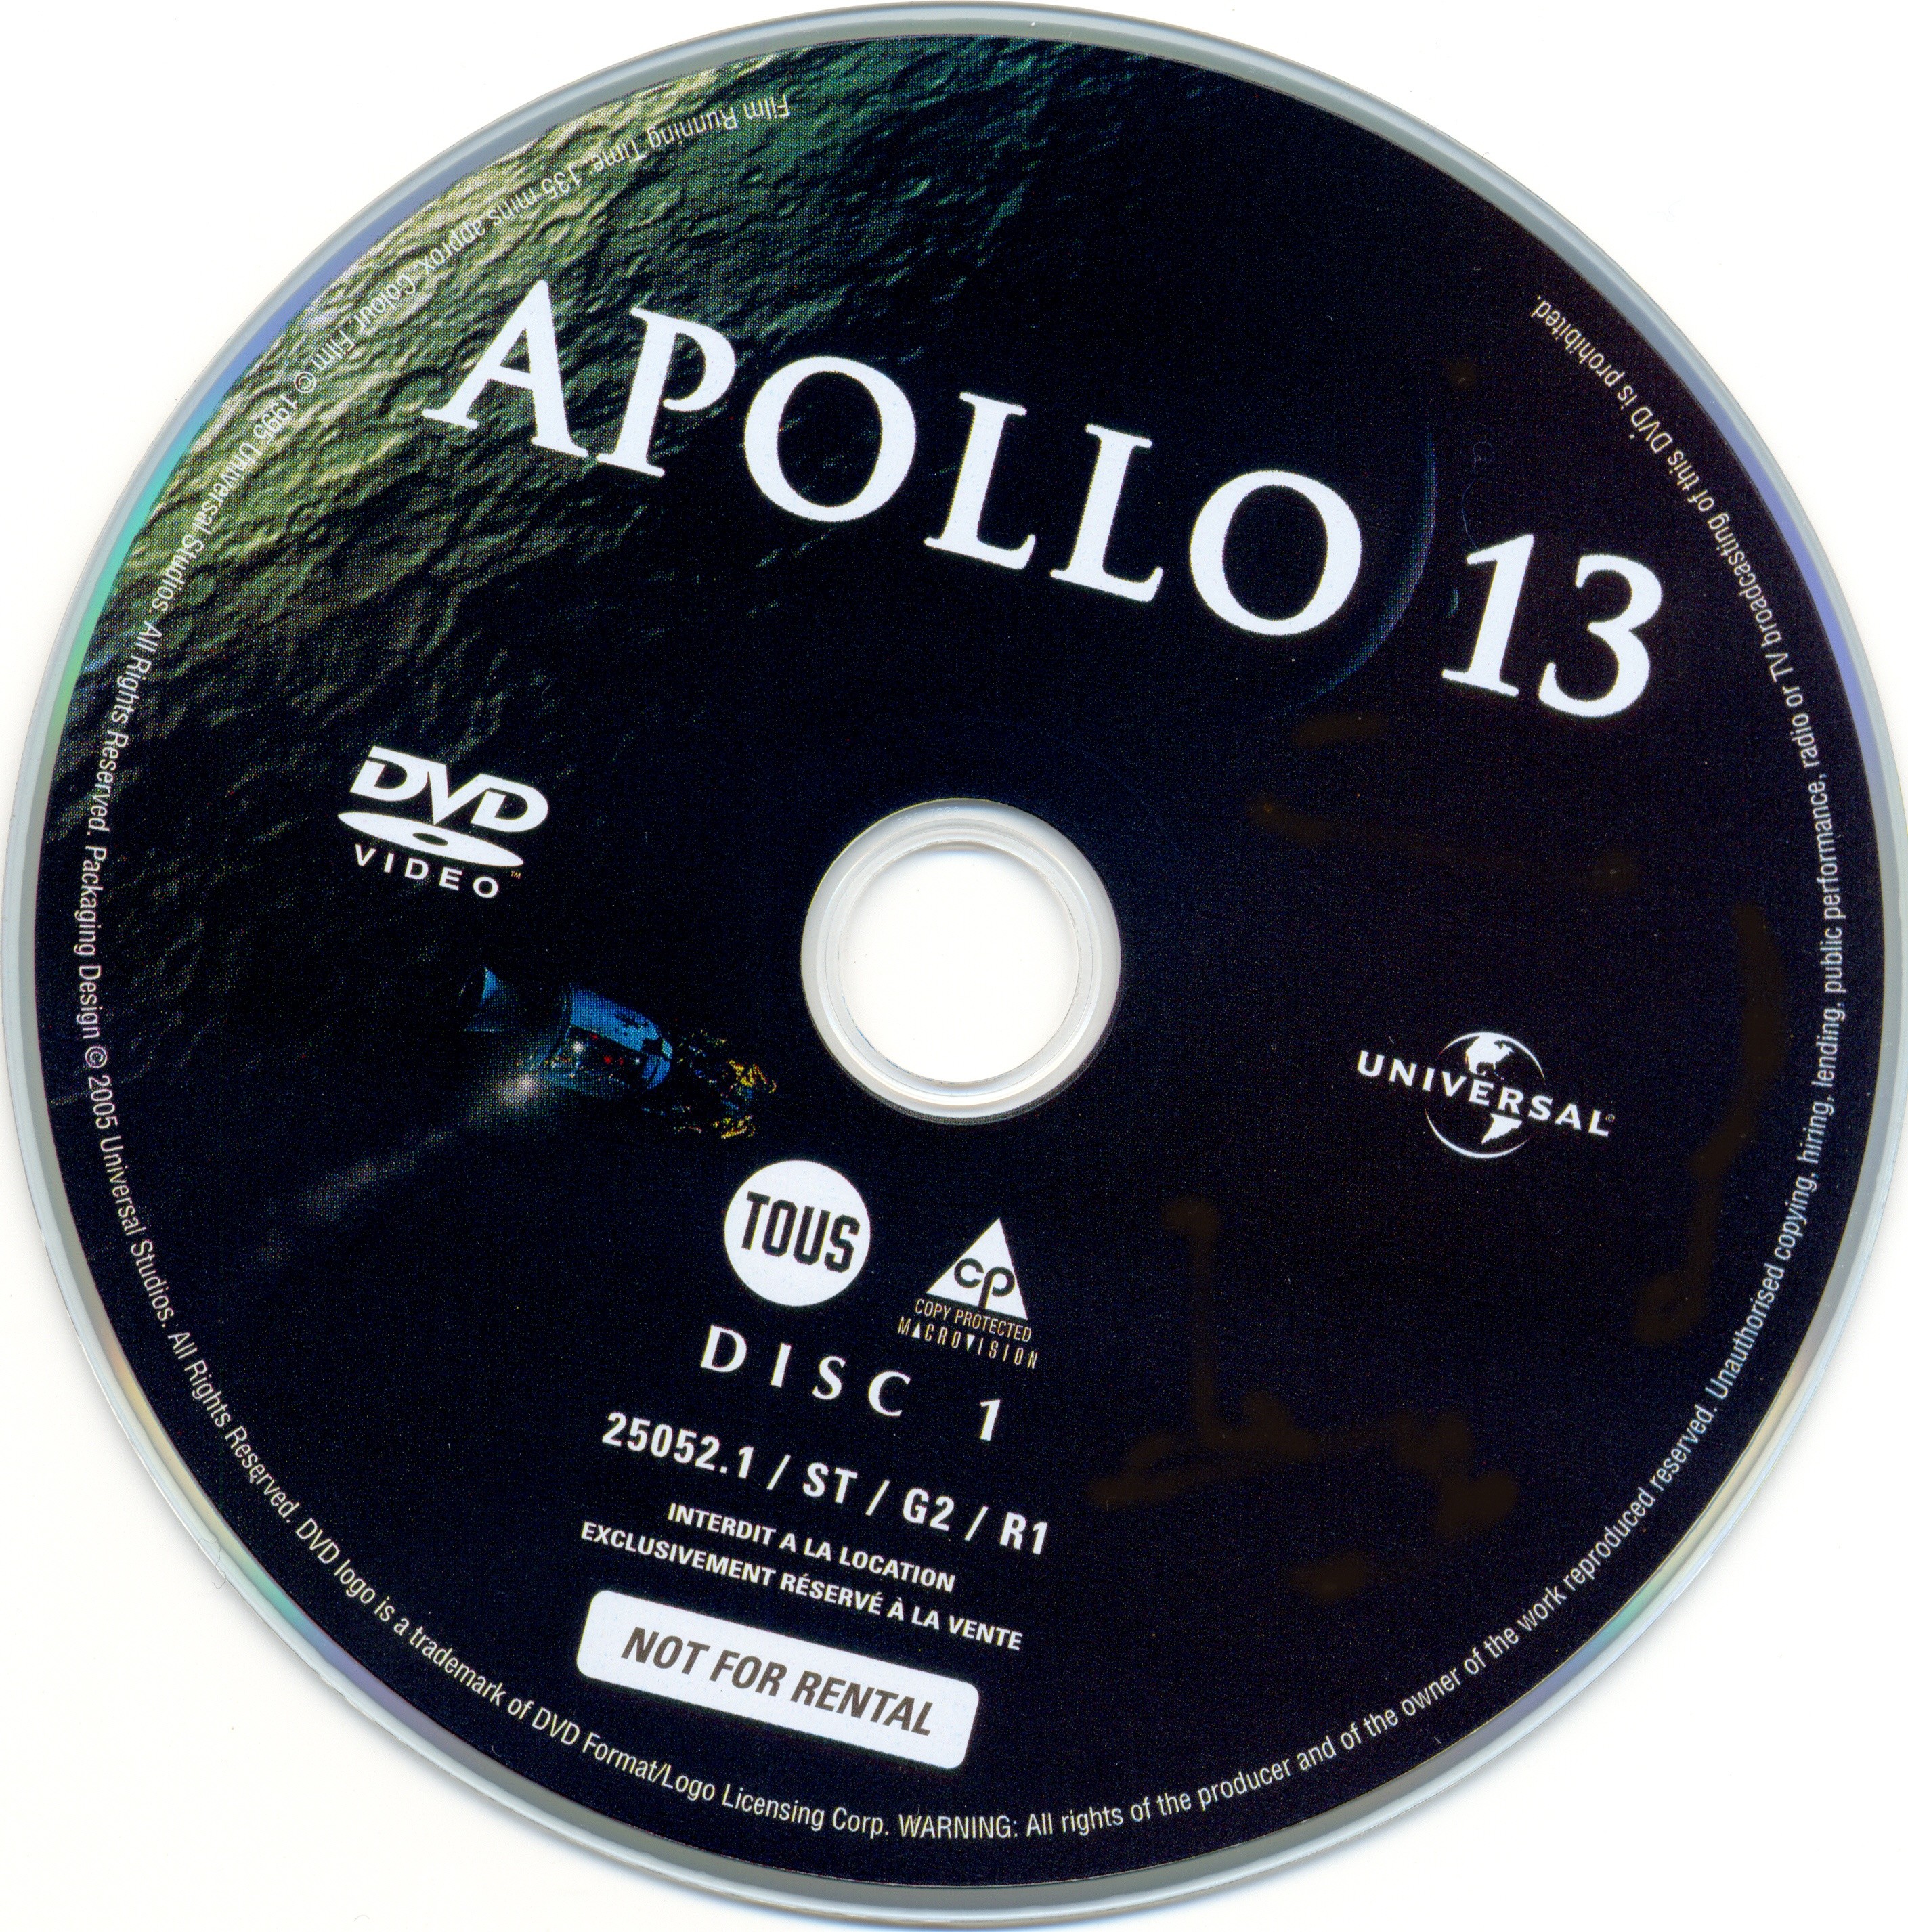 Apollo 13 DISC 1